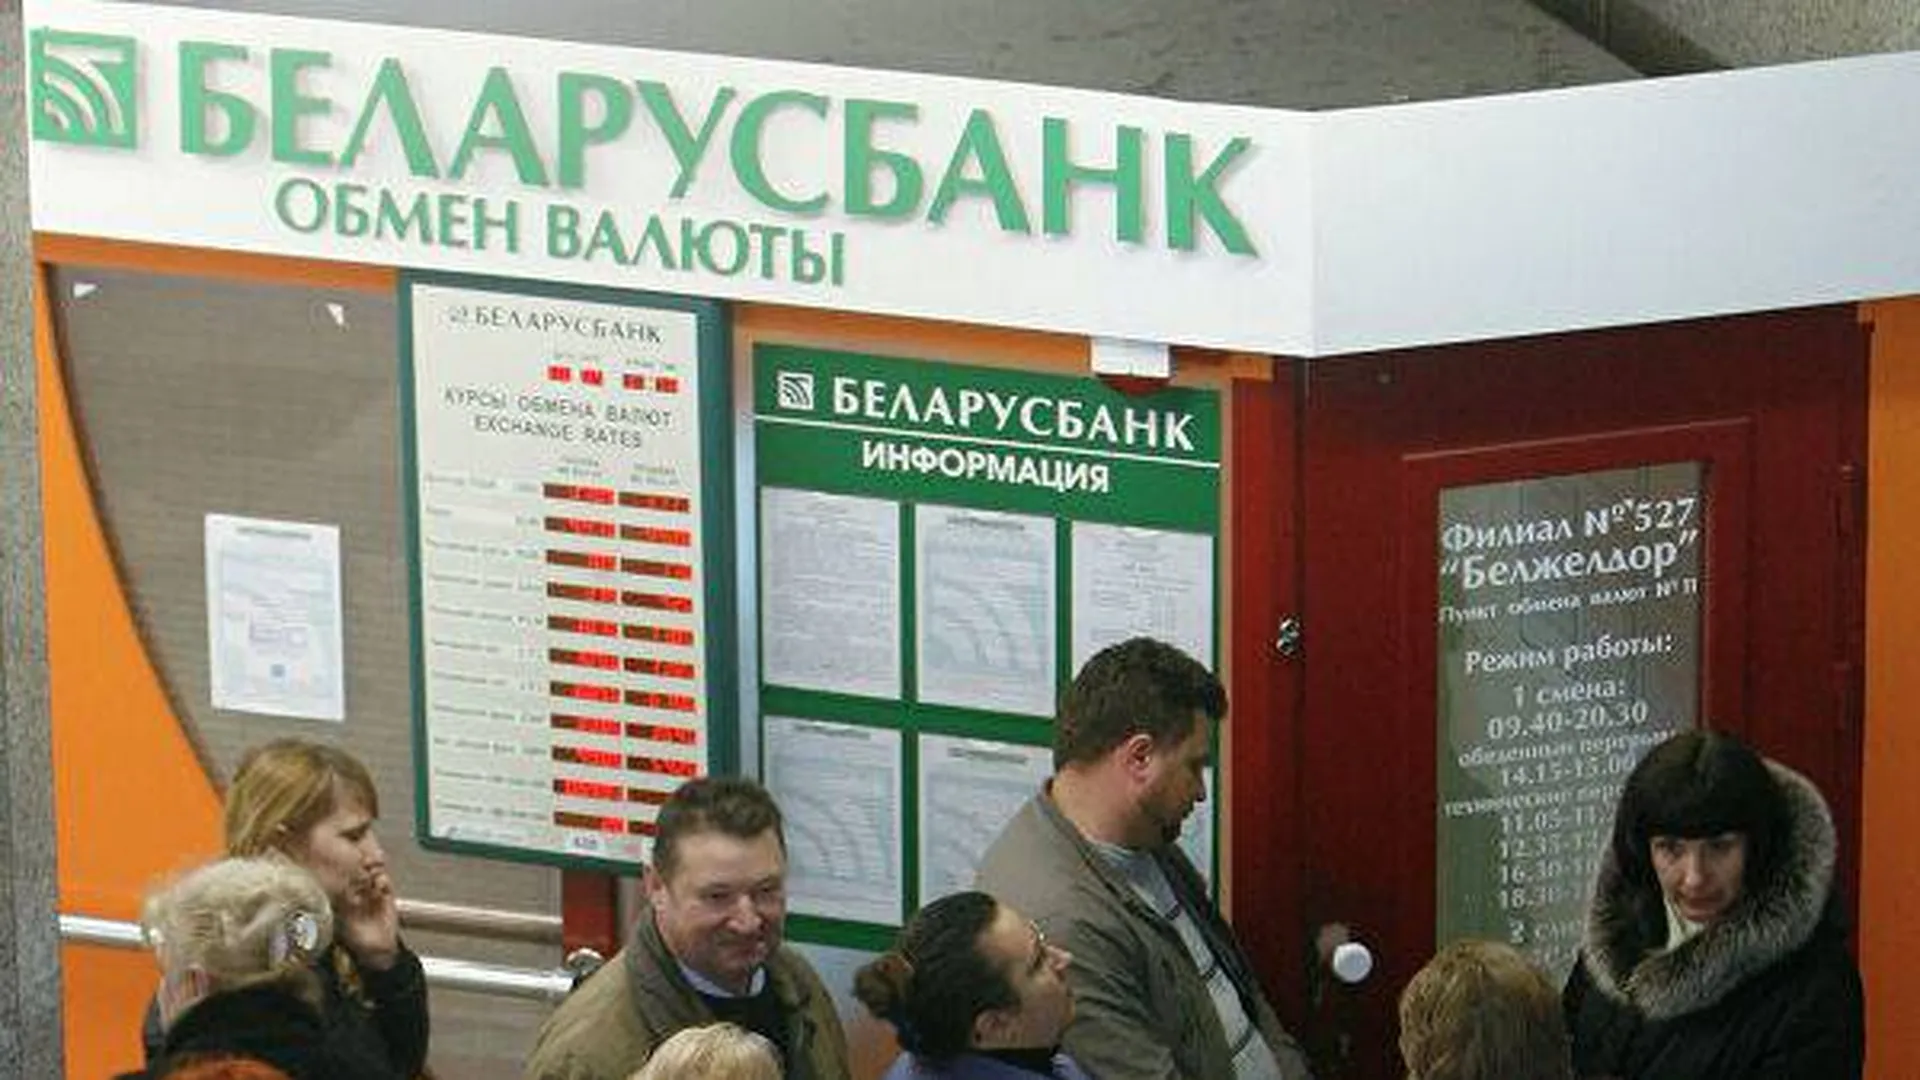 Беларусбанк обмен валют. Обменный пункт на белорусском вокзале Беларусбанк. Обменный пункт на белорусском вокзале. Обмен валюты у вокзала. Белорусские банки валюта